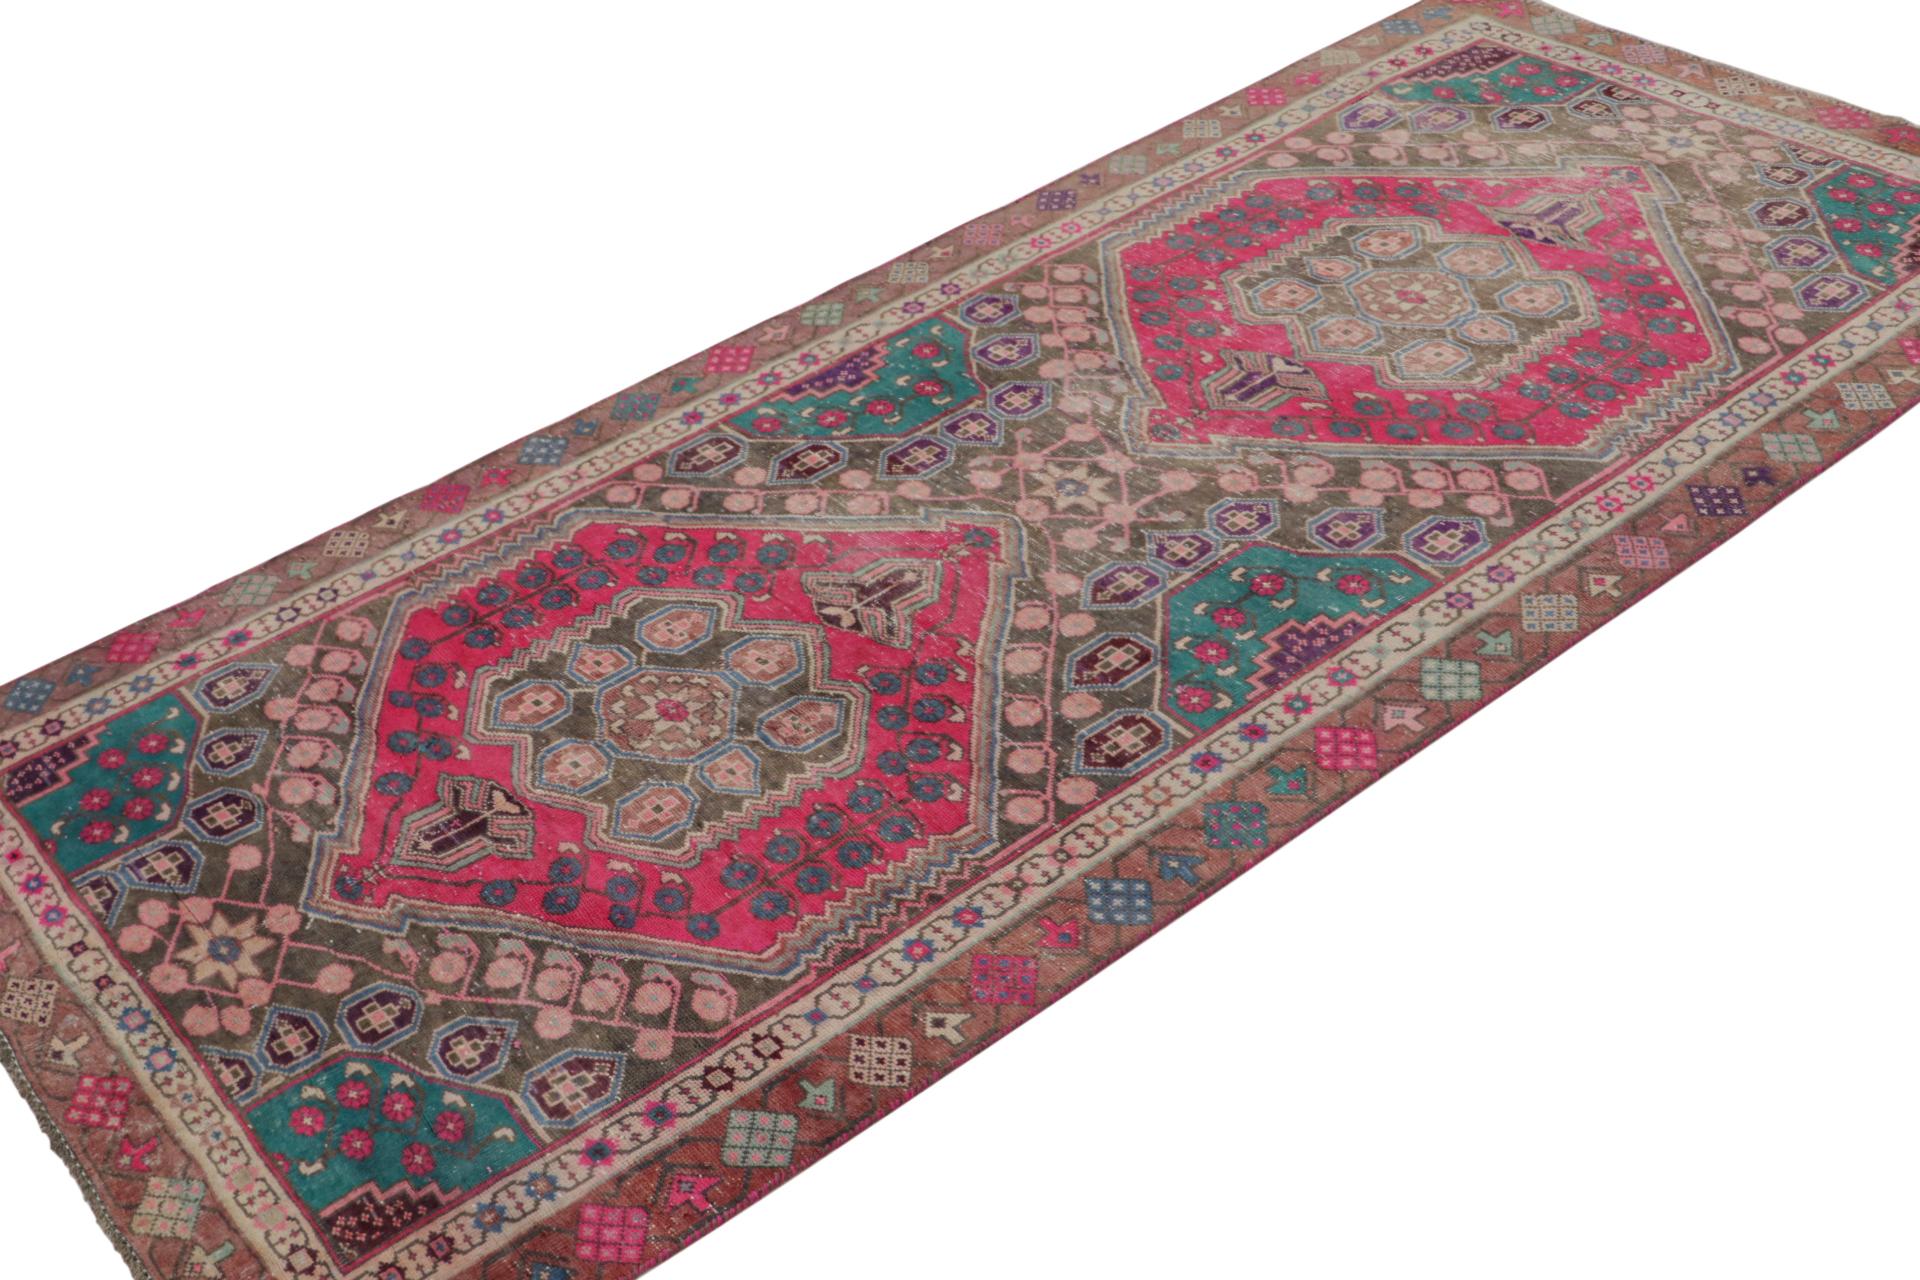 Noué à la main en laine sur coton, un tapis persan Shiraz 4x8 circa 1970-1980 - le dernier à rejoindre les sélections vintage de Rug & Kilim.

Sur le Design :

Ce tapis est une pièce intéressante de couleurs vives et magnifiquement saturées, à